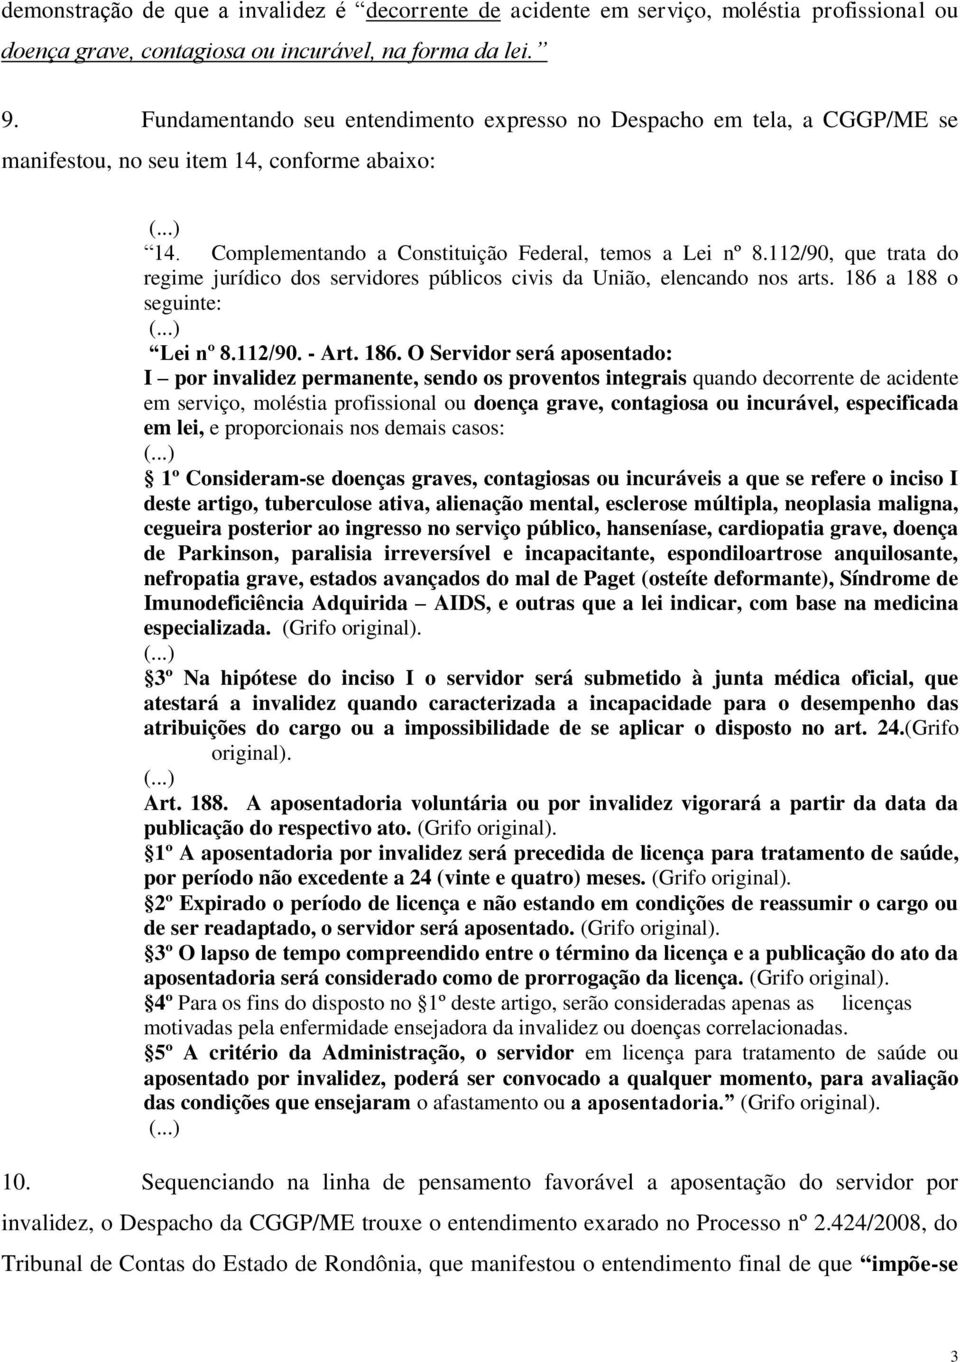 112/90, que trata do regime jurídico dos servidores públicos civis da União, elencando nos arts. 186 